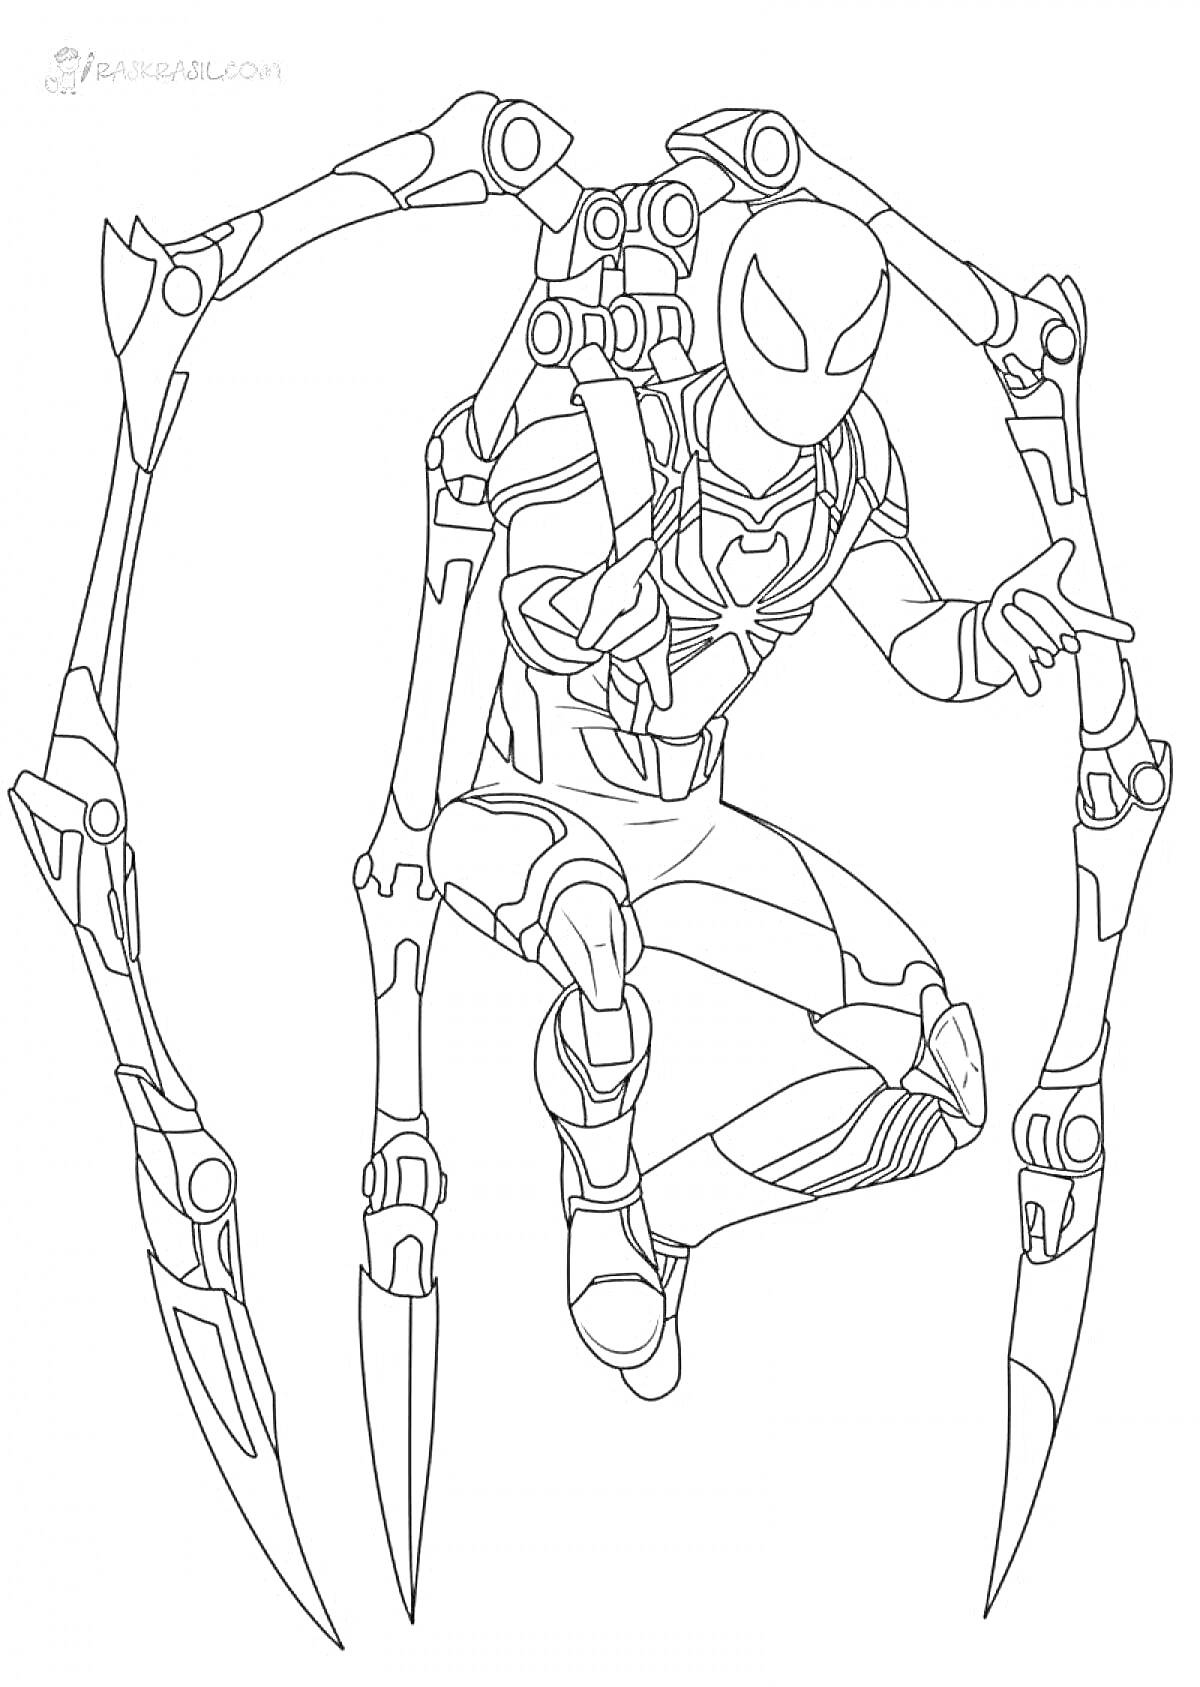 РаскраскаЖелезный Паук с механическими паучьими лапами, в прыжке, в костюме